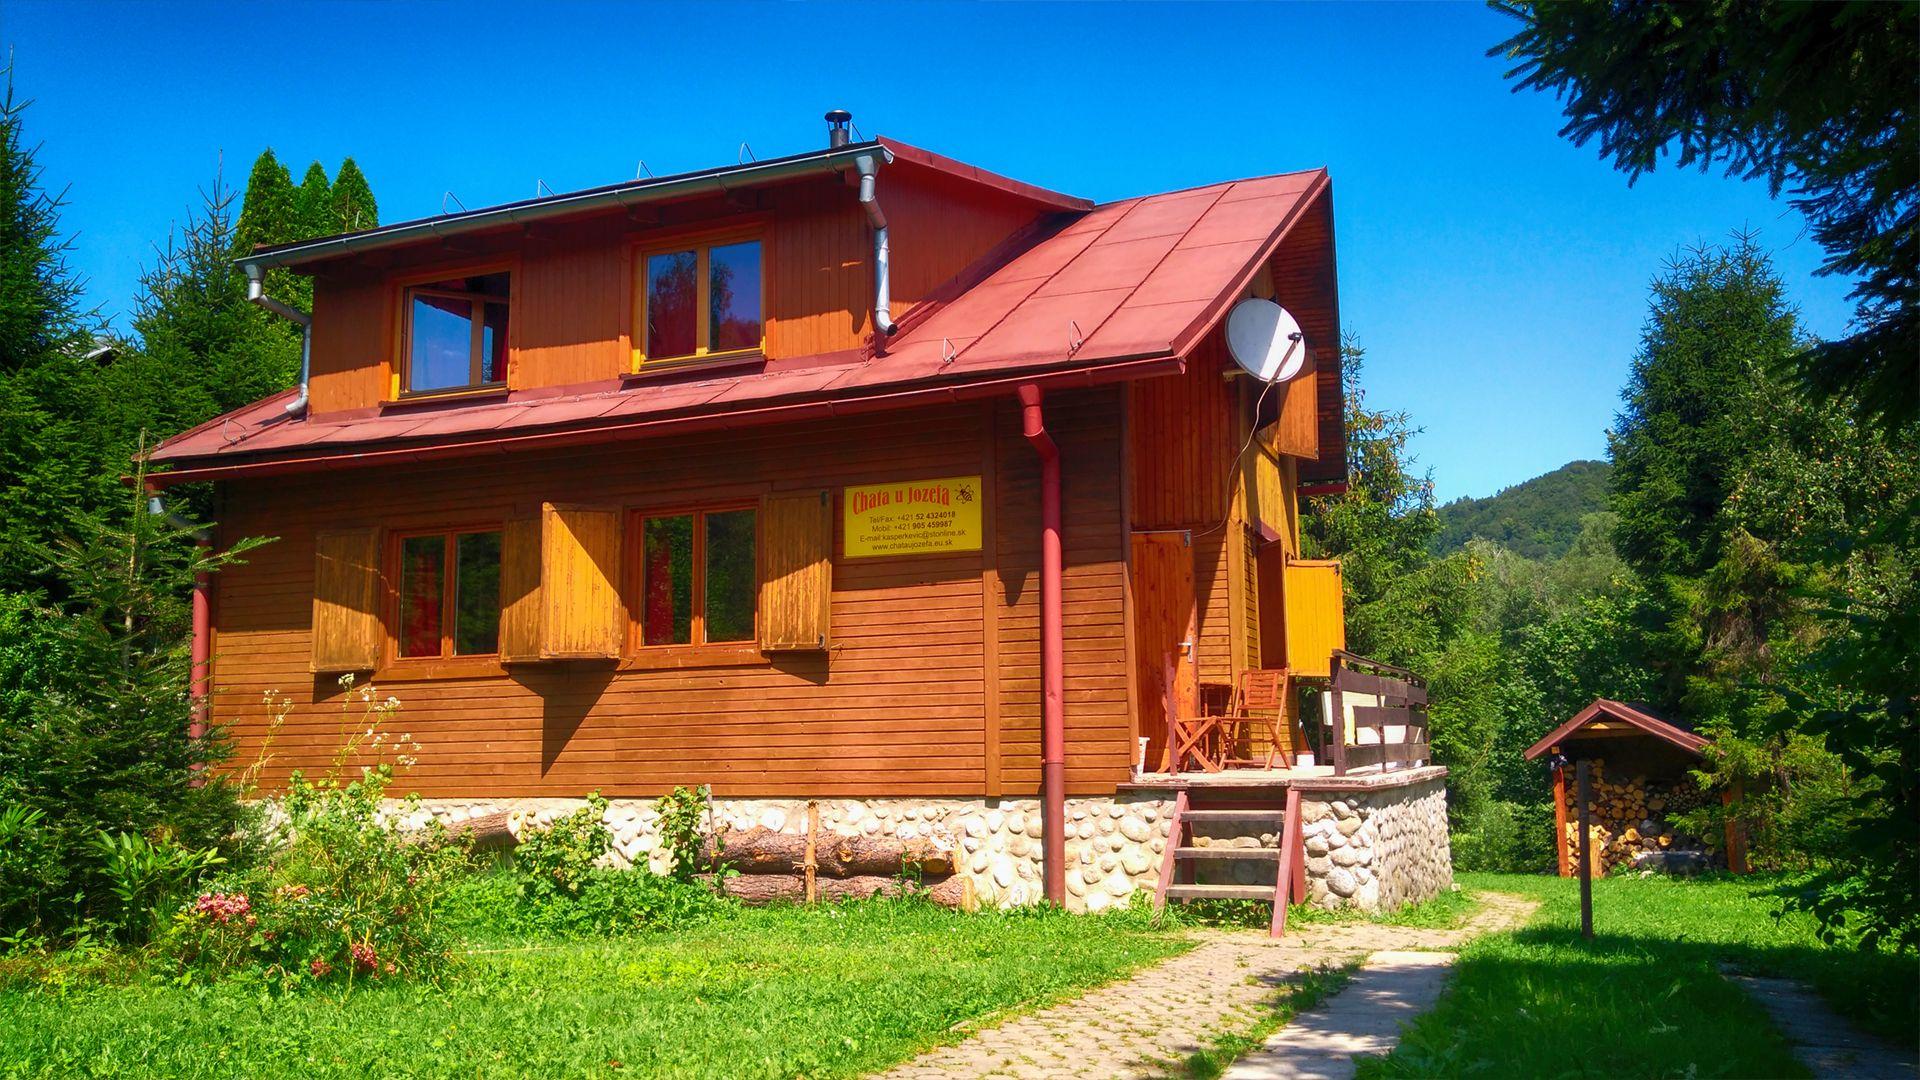 Ferienhaus für 6 Personen 4 Kinder ca 120 m² in Maly Lipnik Ost Slowakei Slowakisches Erzgebirge